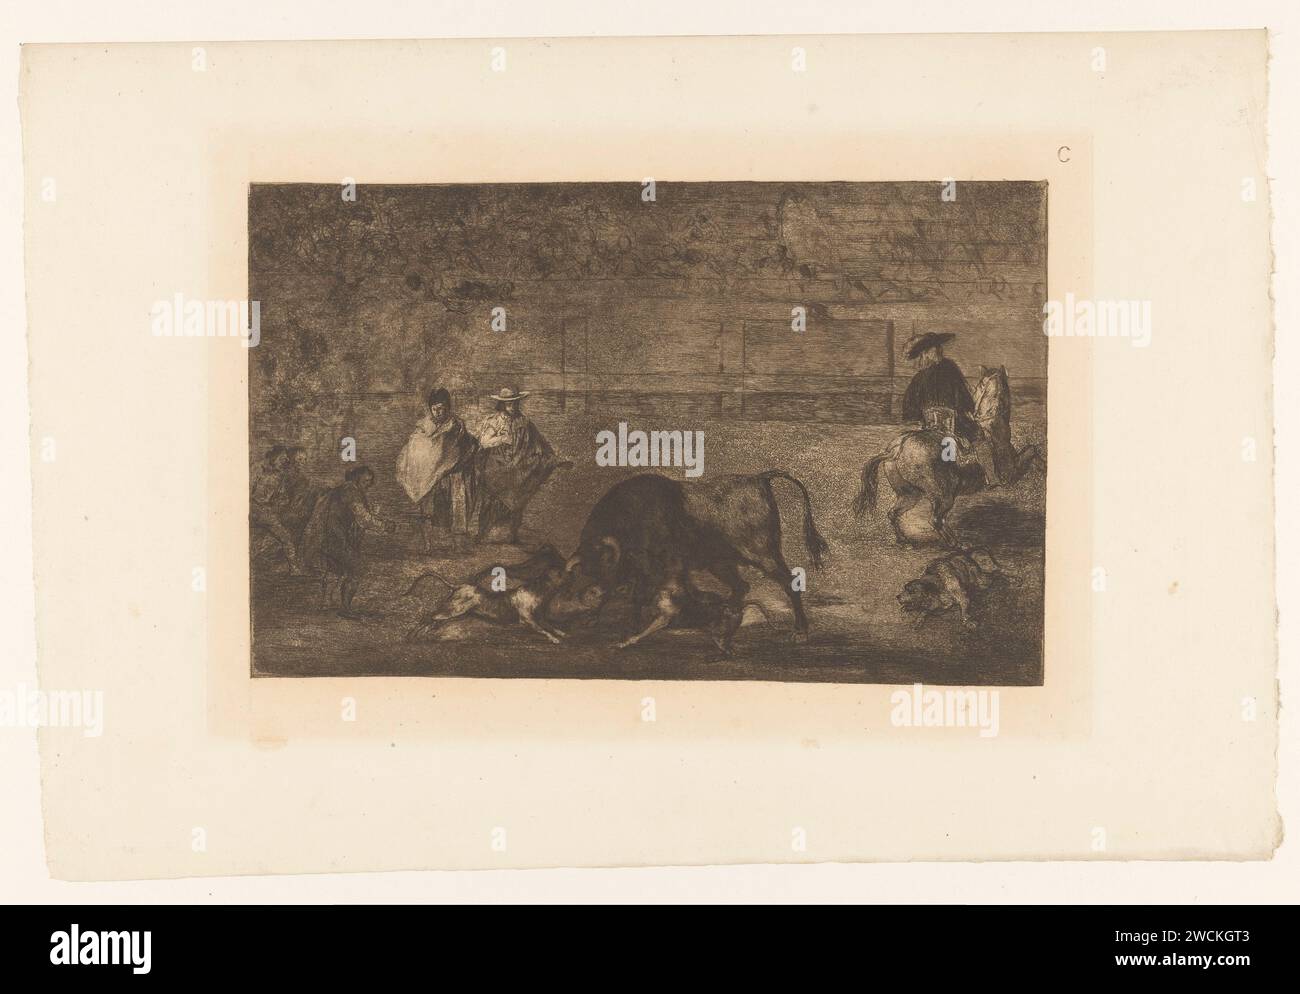 Taureau attaqué par des chiens, Francisco de Goya, 1876 imprimer cinq chiens attaquent un taureau dans une arène. Un chien est blessé par terre. A droite un homme à cheval, vu au dos. En haut à droite : C. imprimeur : Spainpublisher : corrida de gravure sur papier Paris Banque D'Images